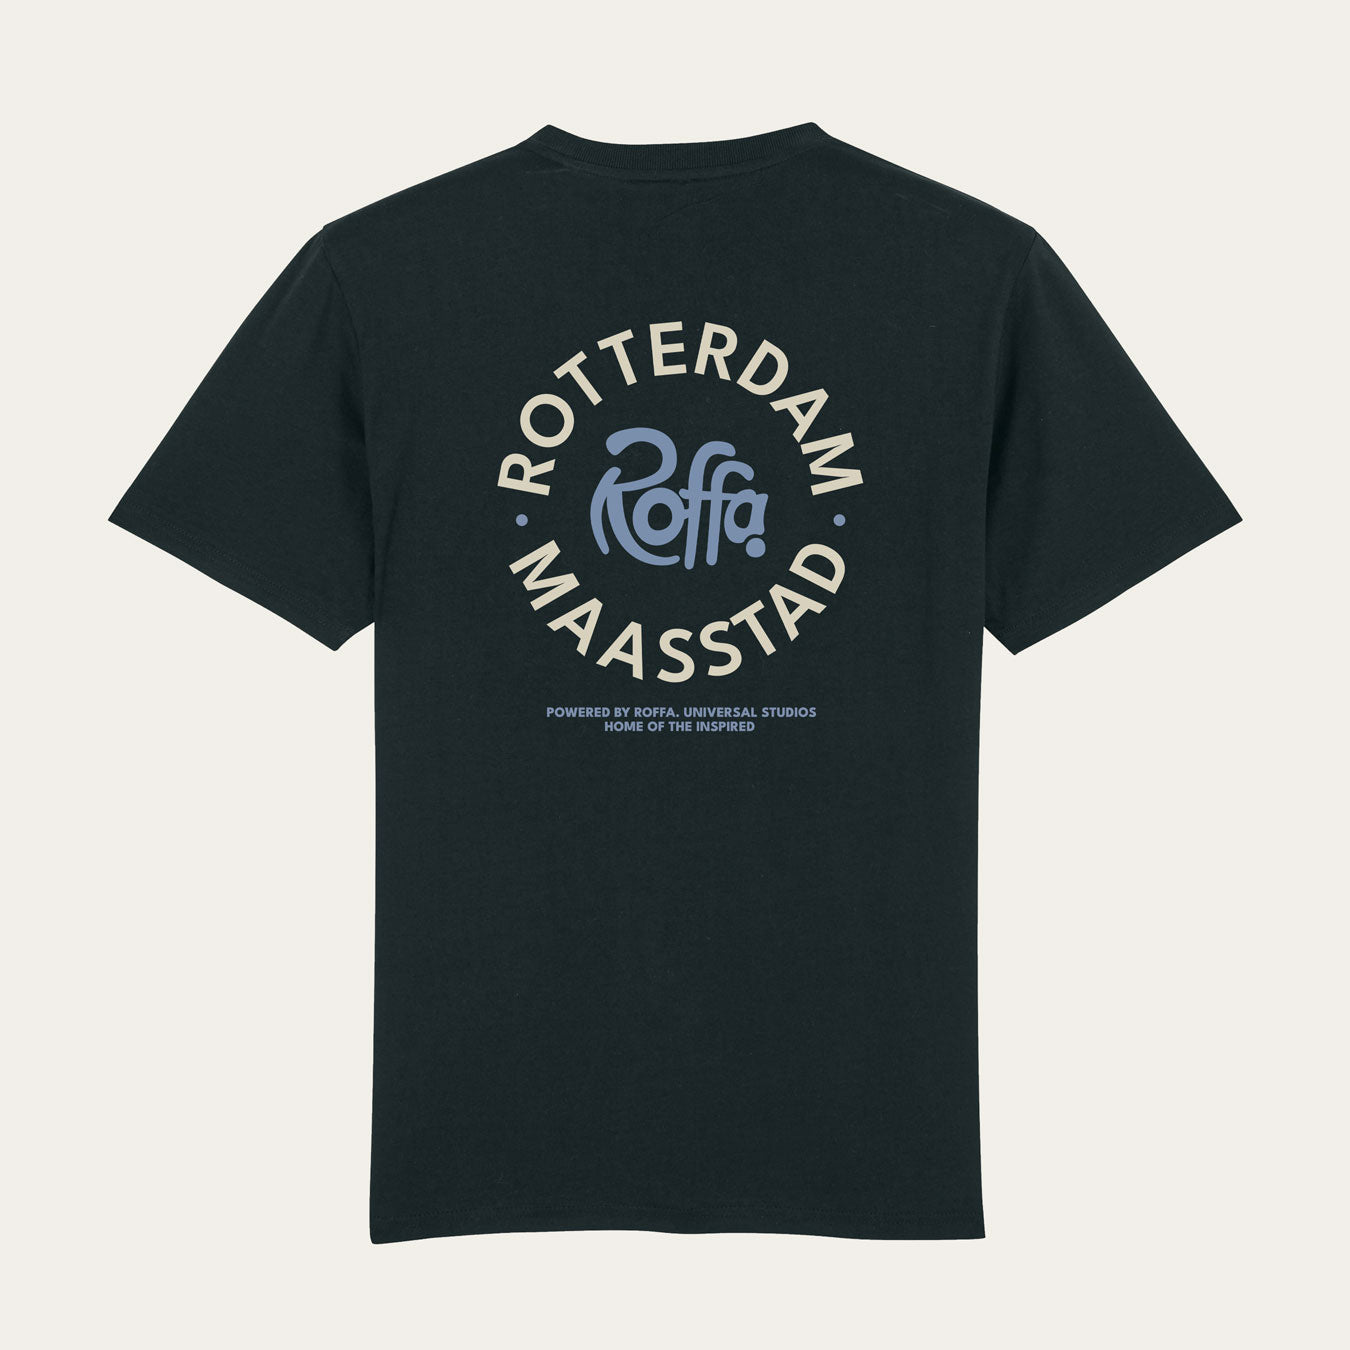 Zwart t-shirt met een rond Roffa en rotterdam logo